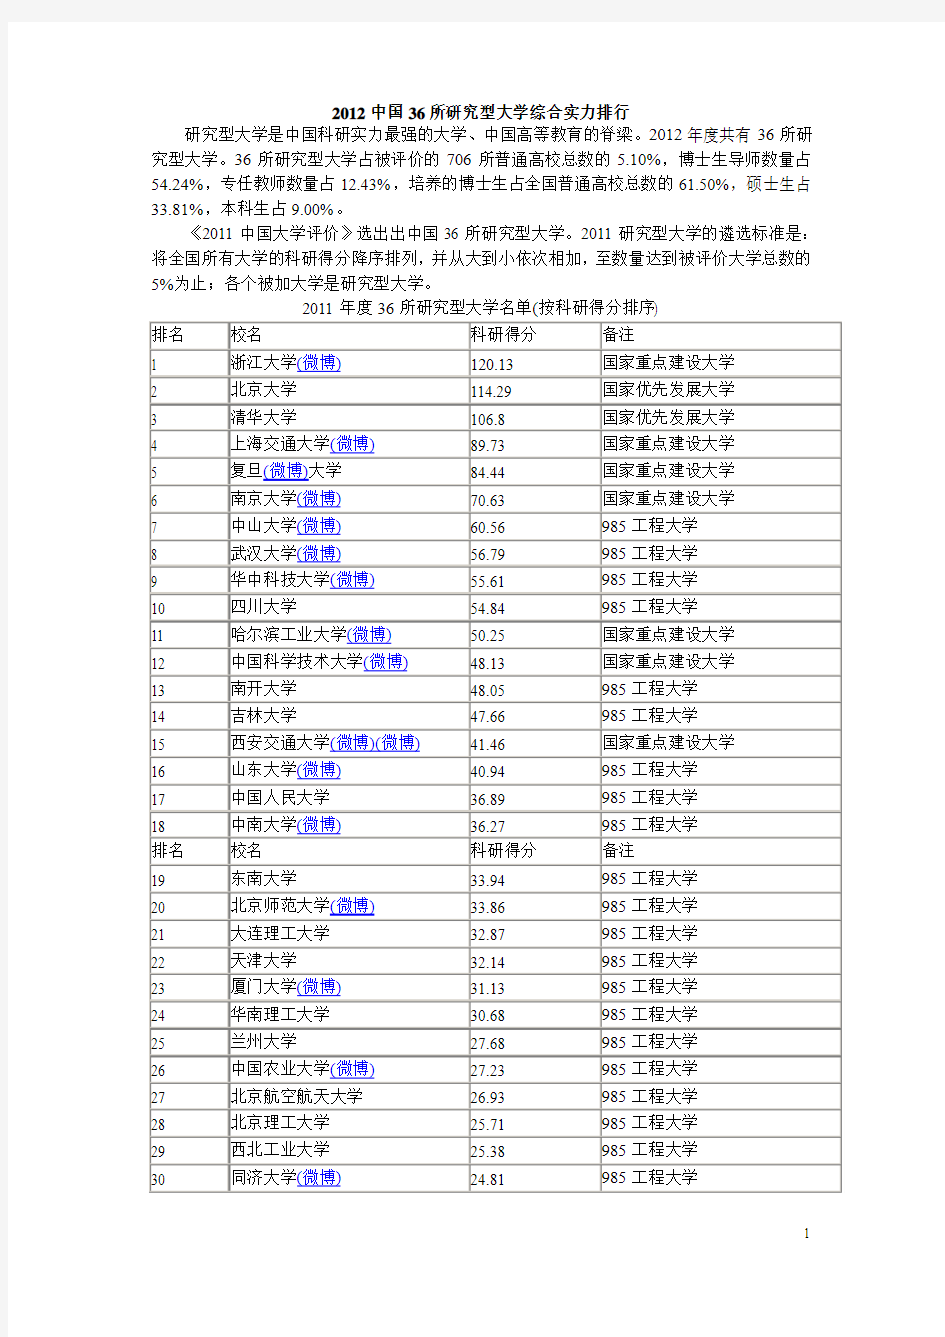 2012中国36所研究型大学综合实力排行榜